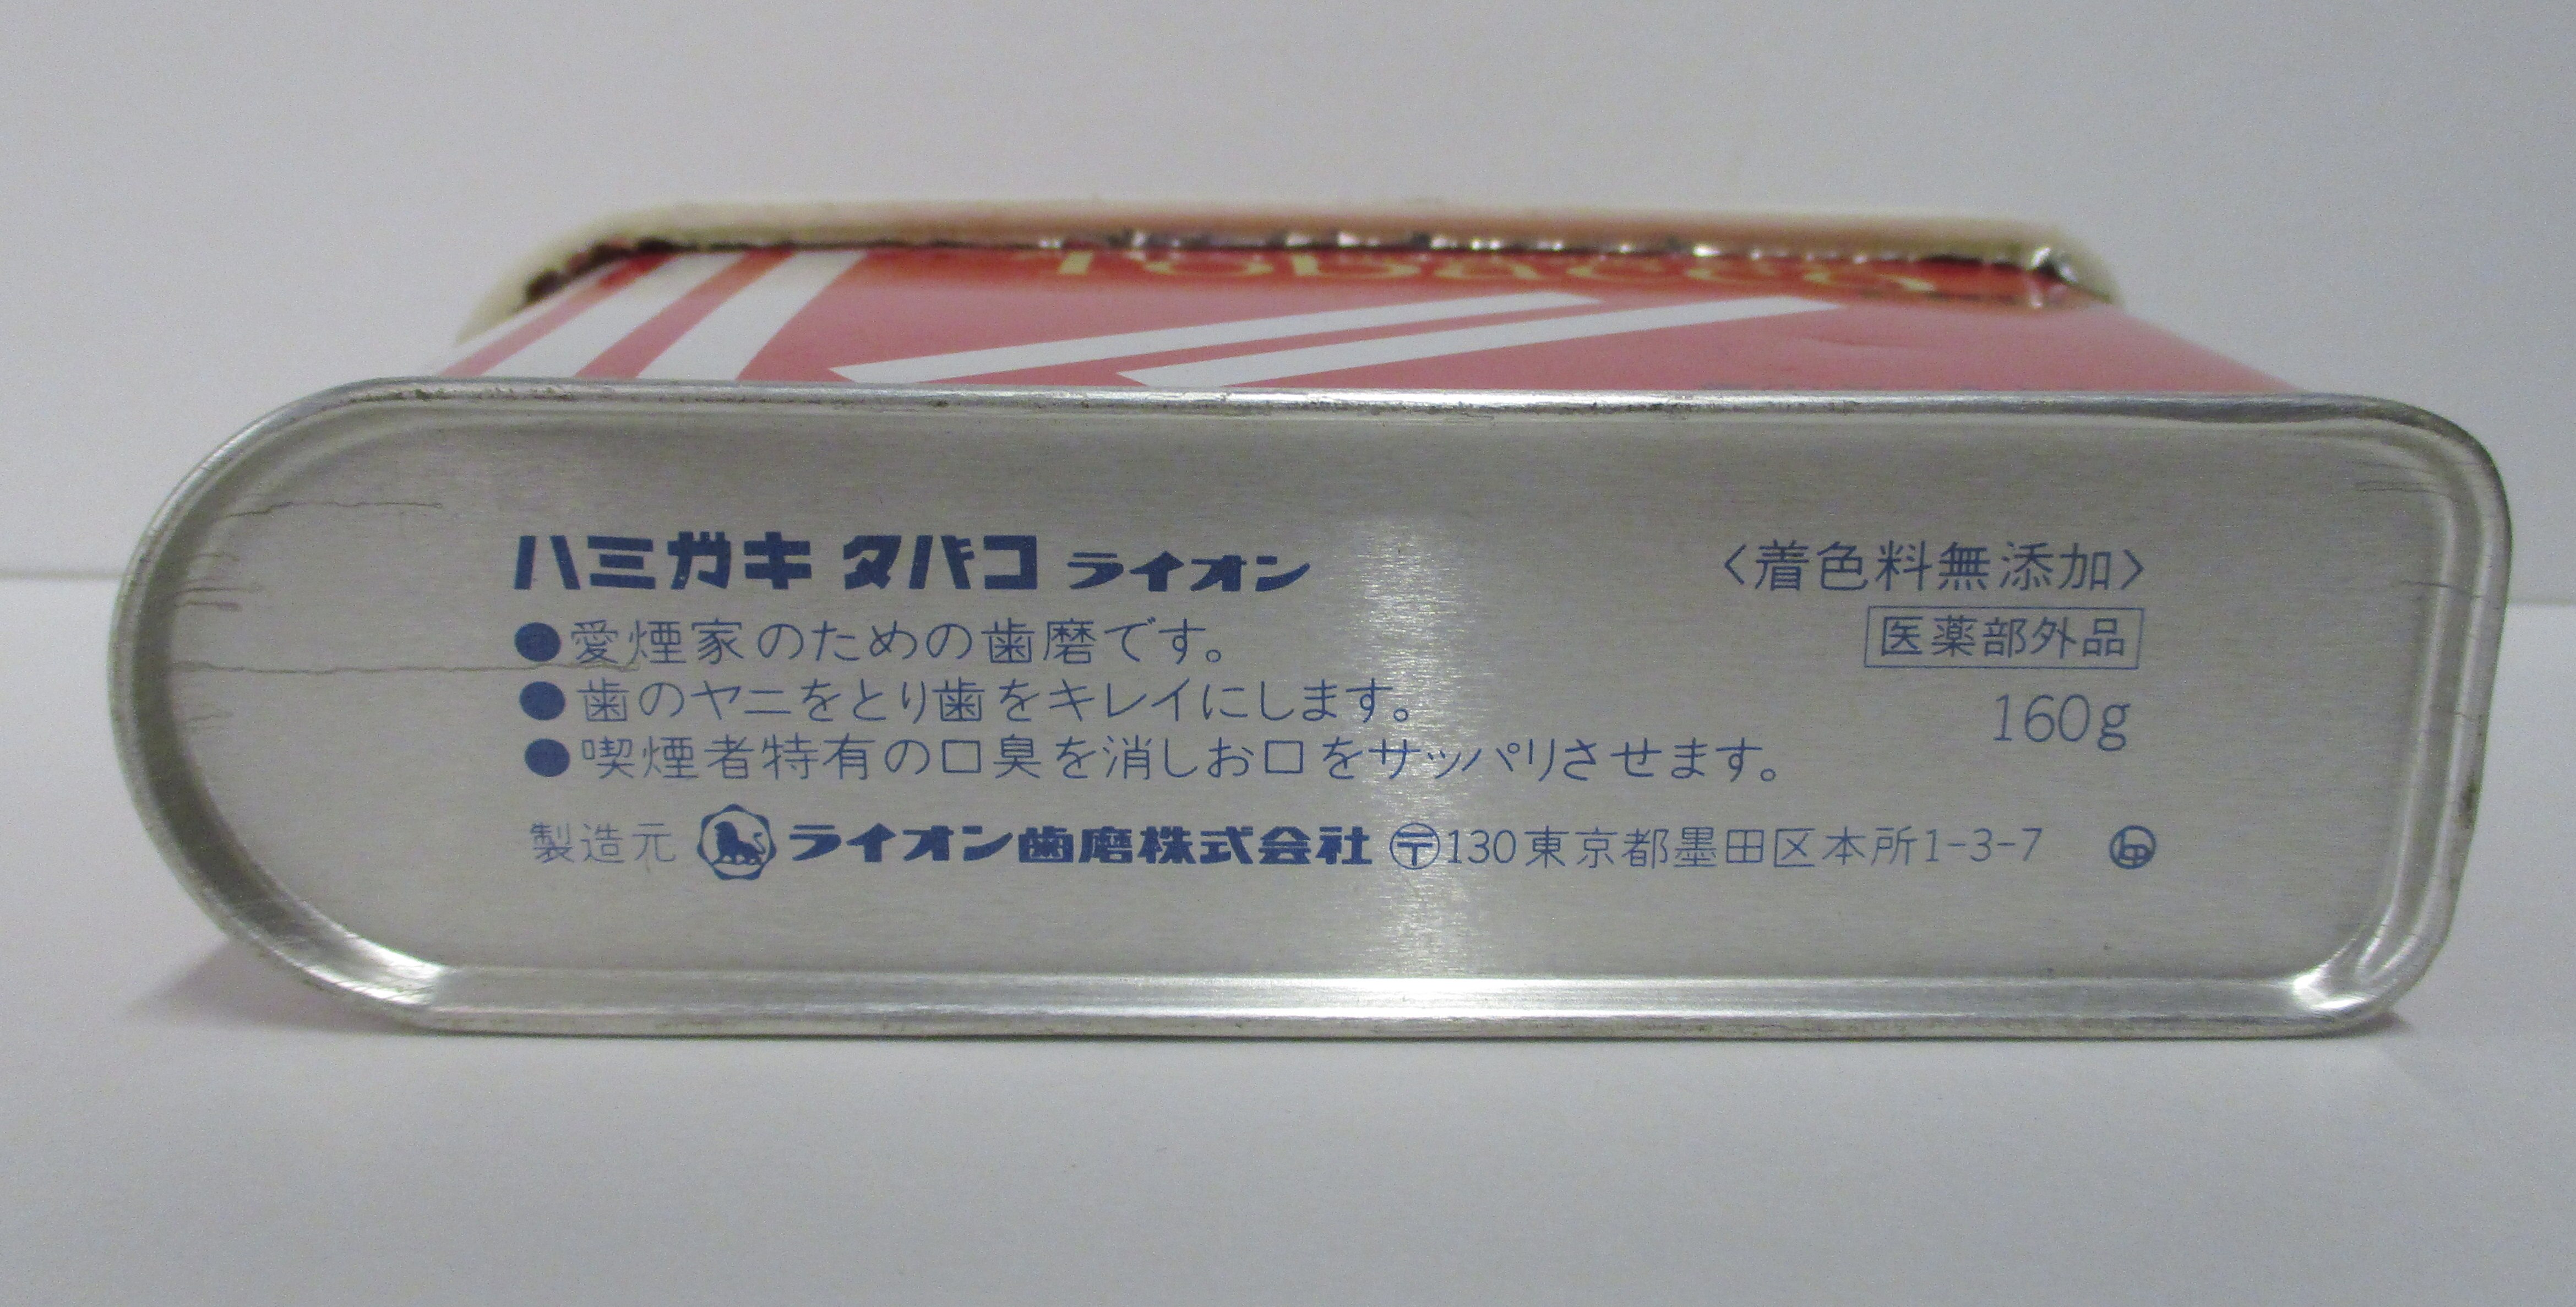 ハミガキ タバコ ライオン 160g-10個-